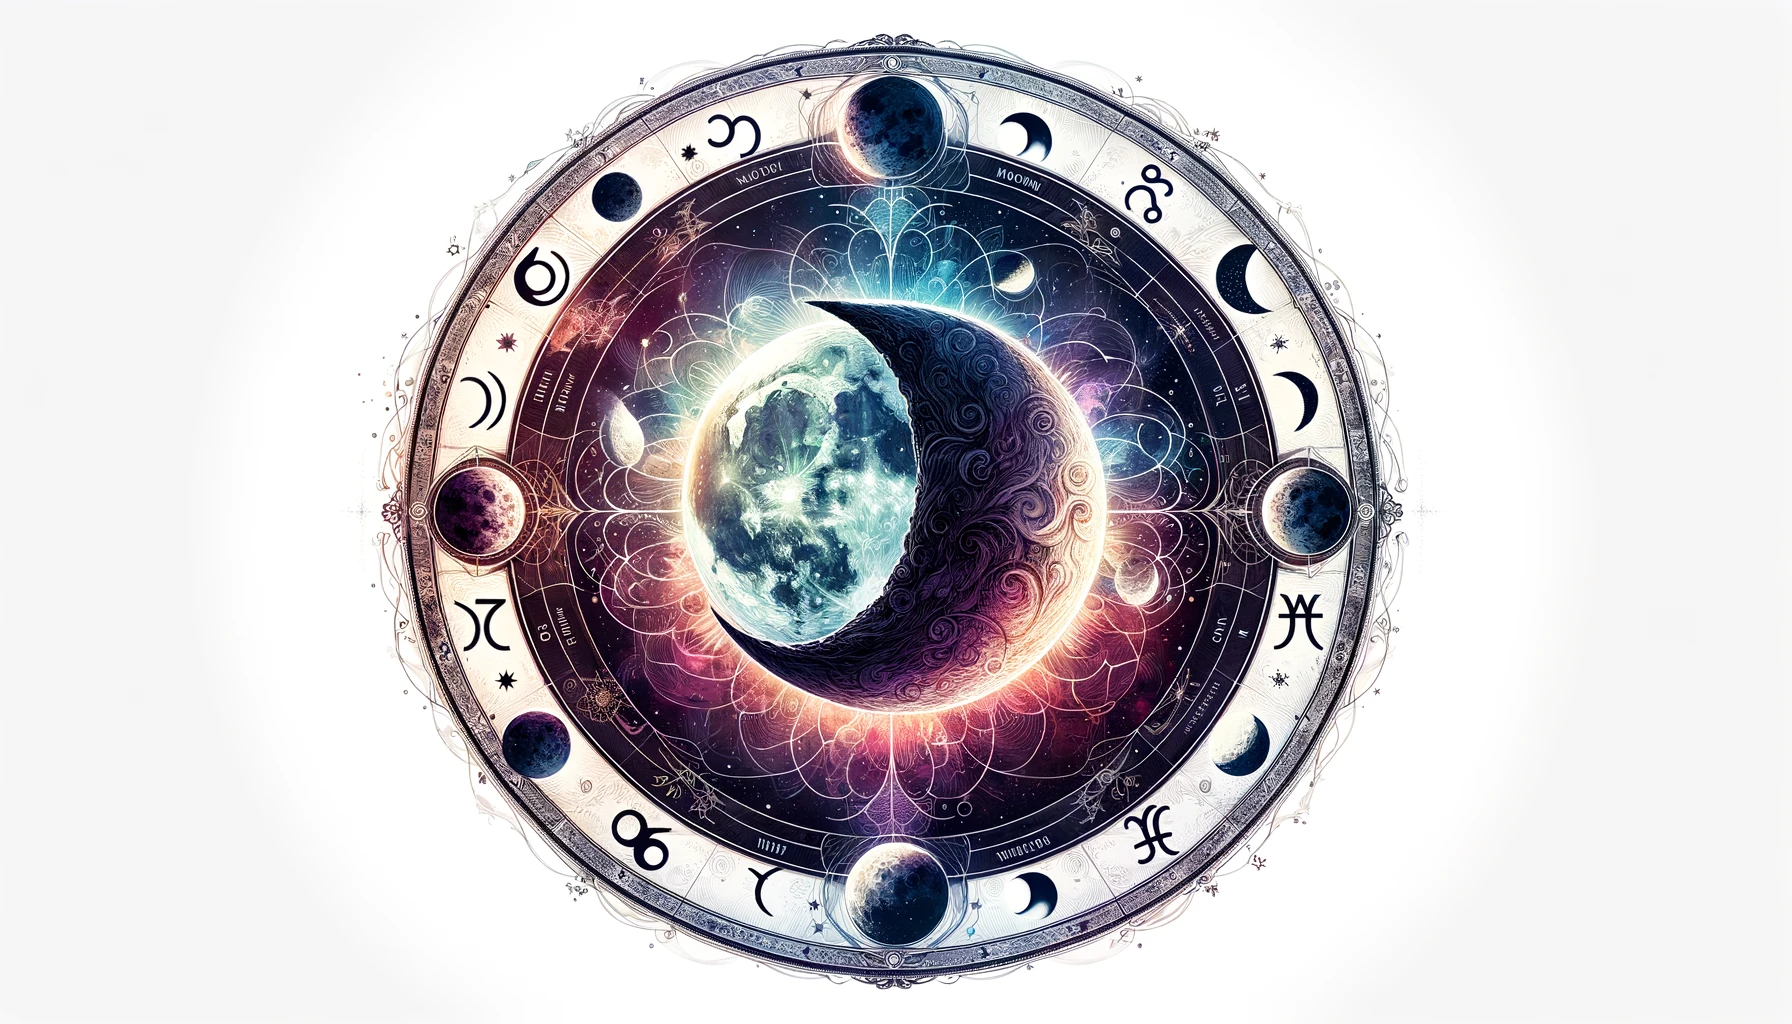 Signification de la lune en astrologie et symboliques